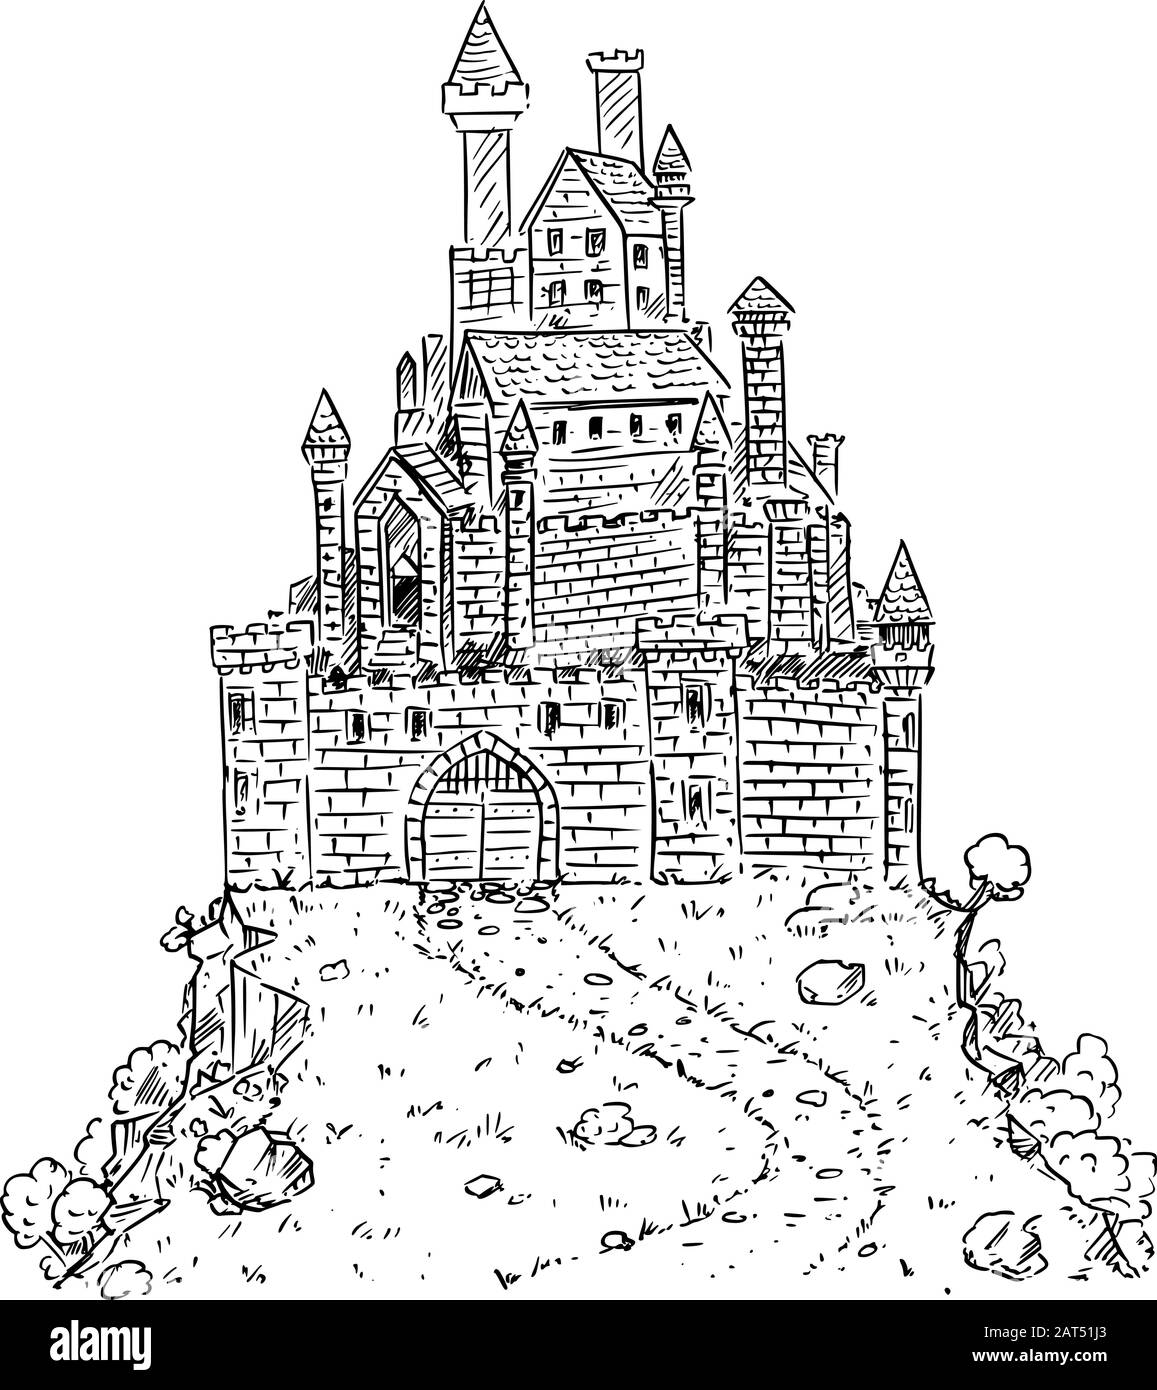 Vektor Schwarz-Weiß-Cartoon-Illustration oder Zeichnung von mittelalterlichen oder Fantasy-Burg auf Hügel. Stock Vektor